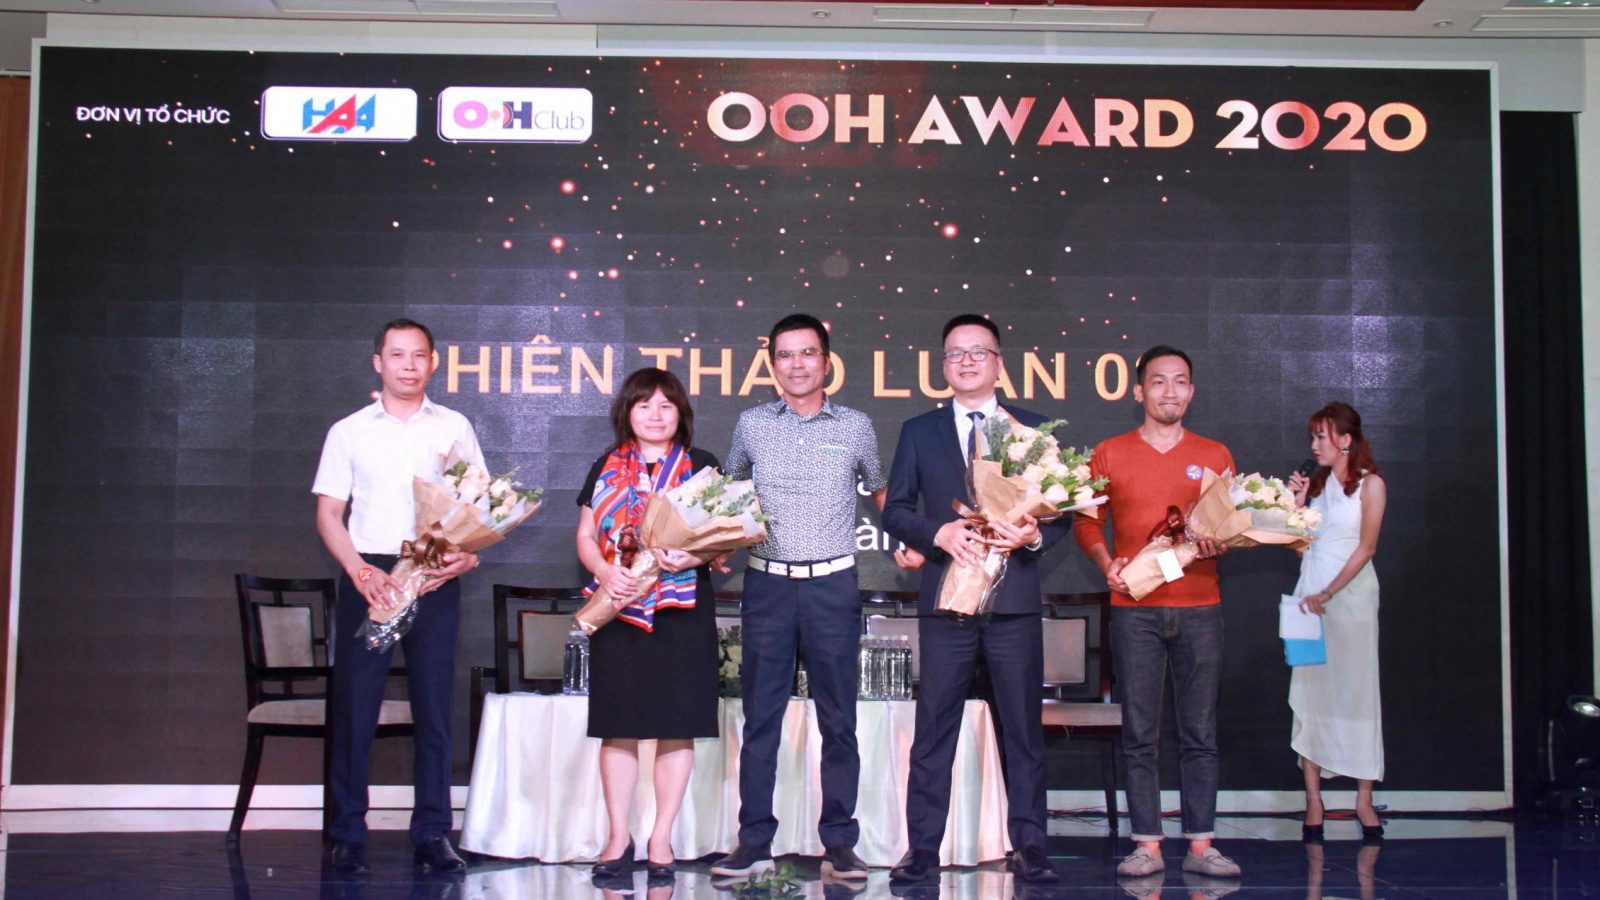 OOH-Award-2020-4-scaled-e1611039386659-1600x900